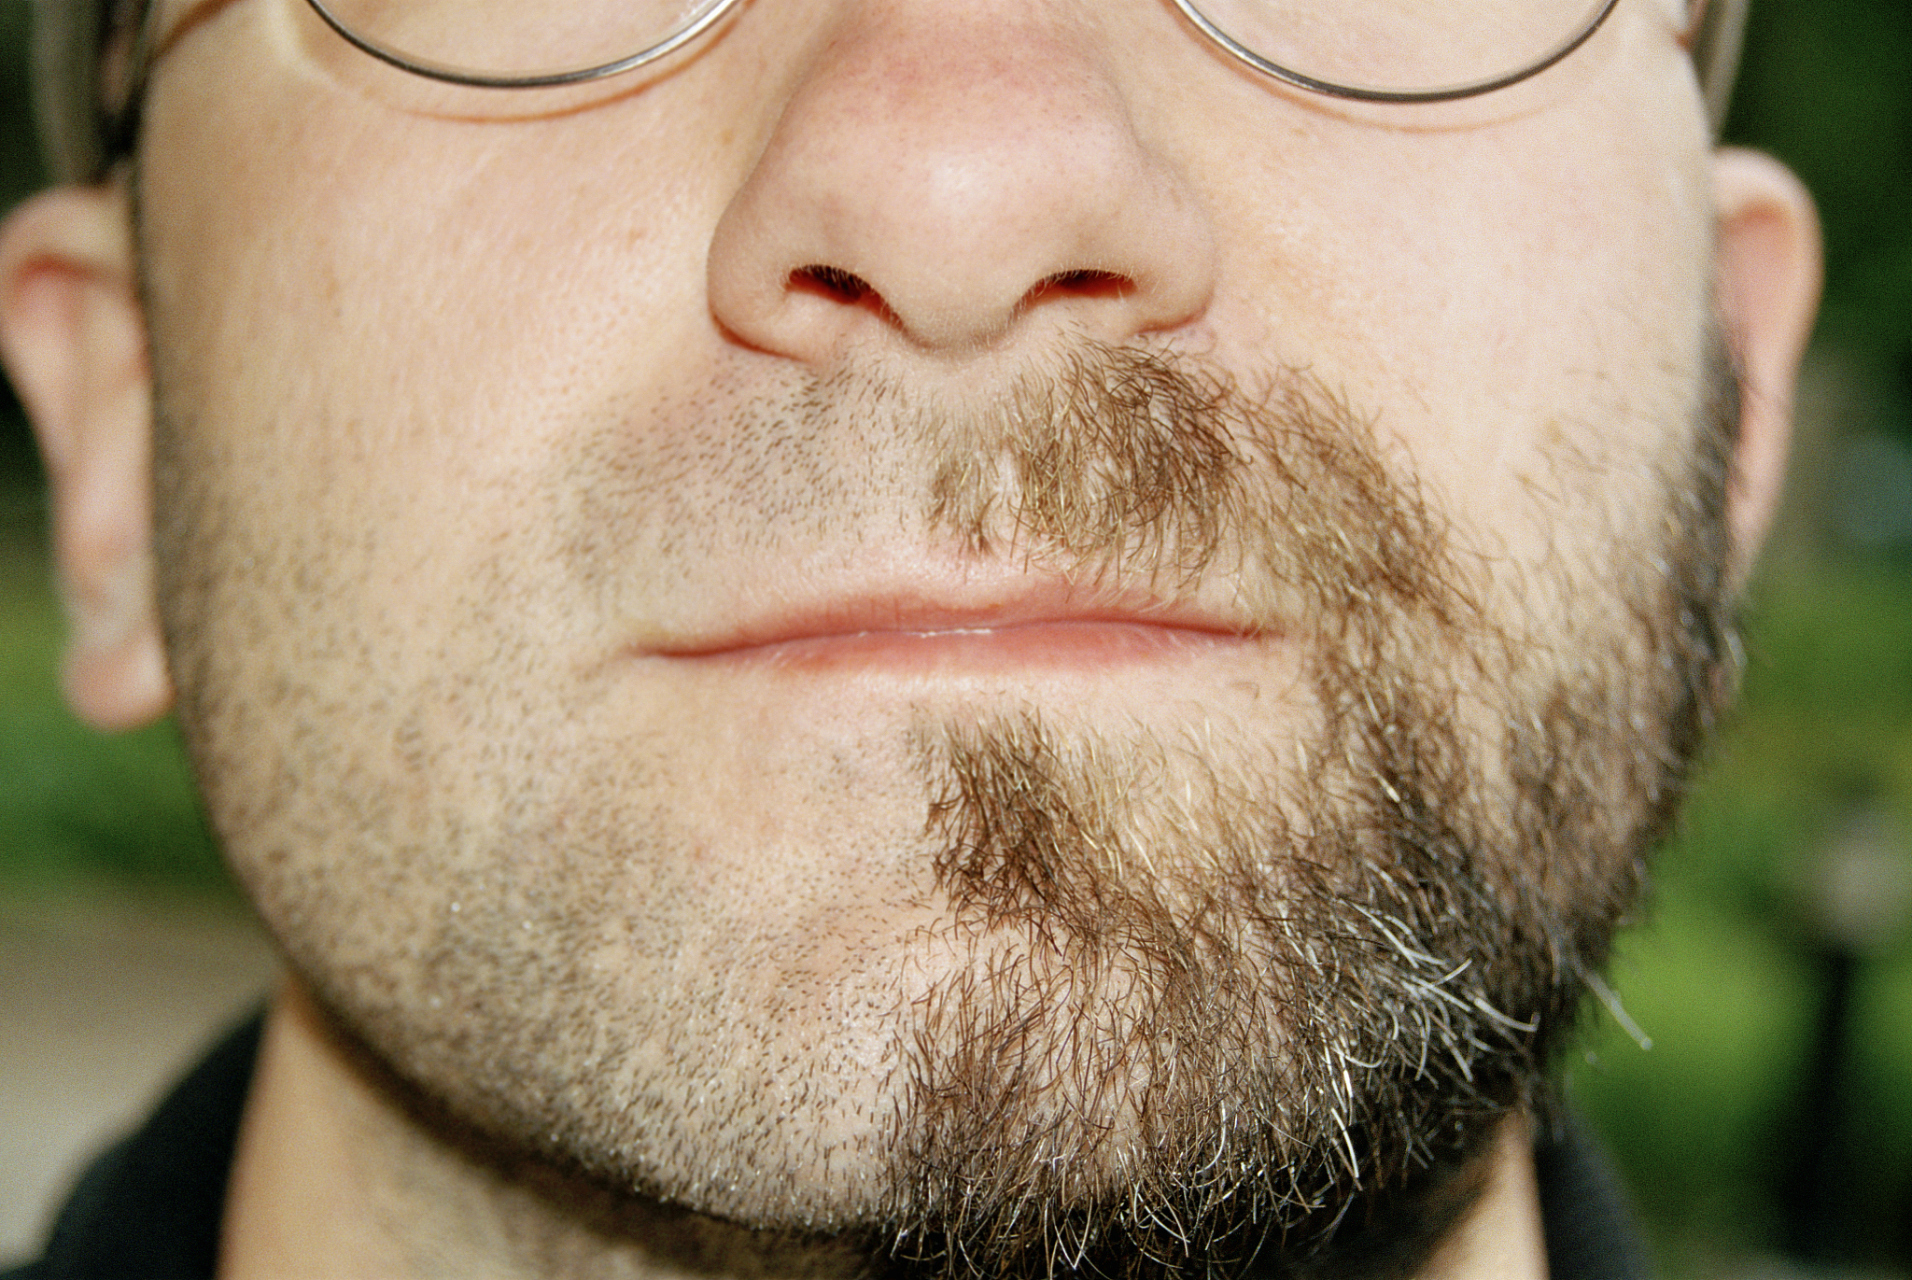 相信我们有的男生也会有胡子胡青的困扰,不喜欢这种胡子拉碴的,给人